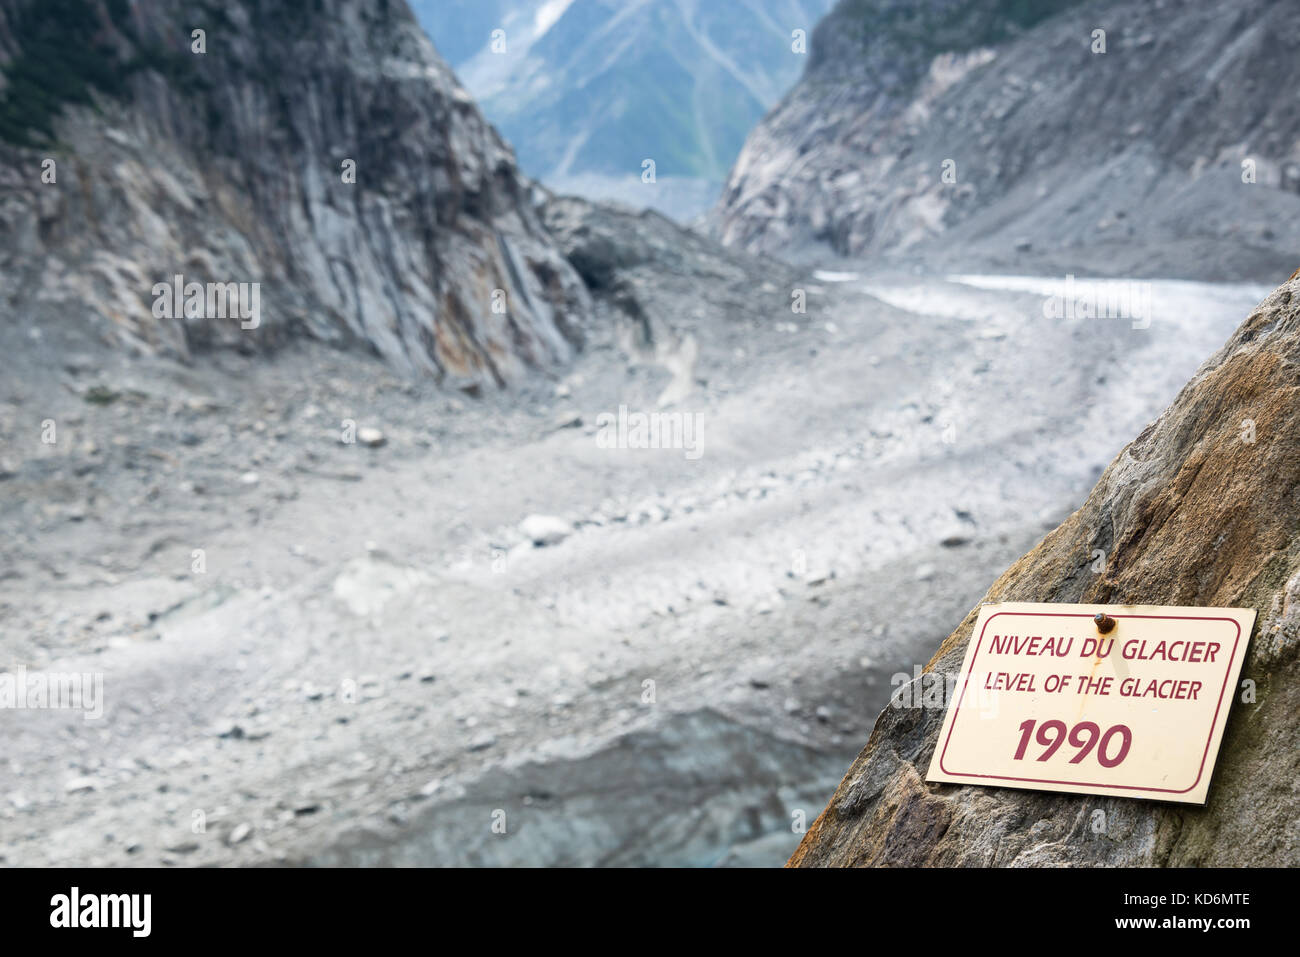 Signe indiquant le niveau de la mer de glace de glacier en 1990, la fonte  des glaciers, l'illustration à Chamonix le massif du mont blanc, les Alpes,  France Photo Stock - Alamy